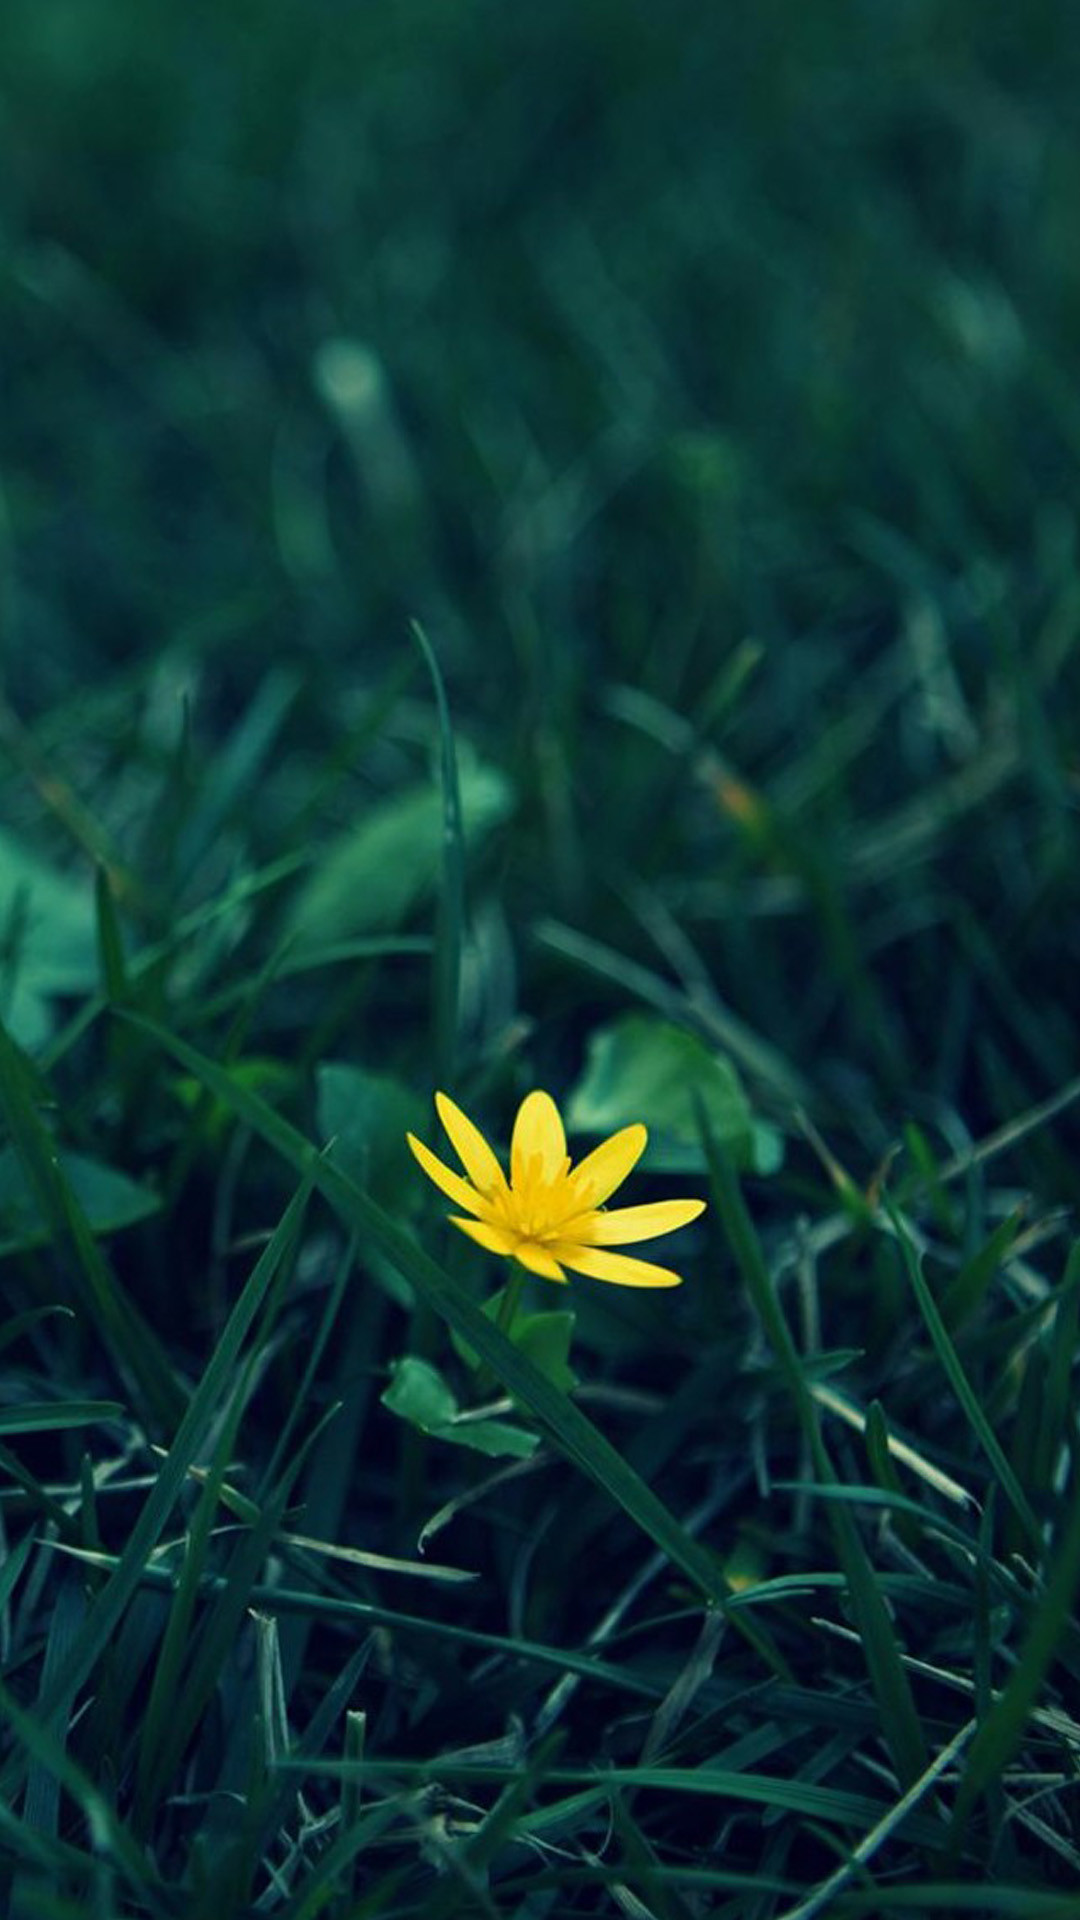 1080x1920 Nature Little Yellow Flower Green Grassland Blur Background #iPhone #6  #plusï¼wallpaper